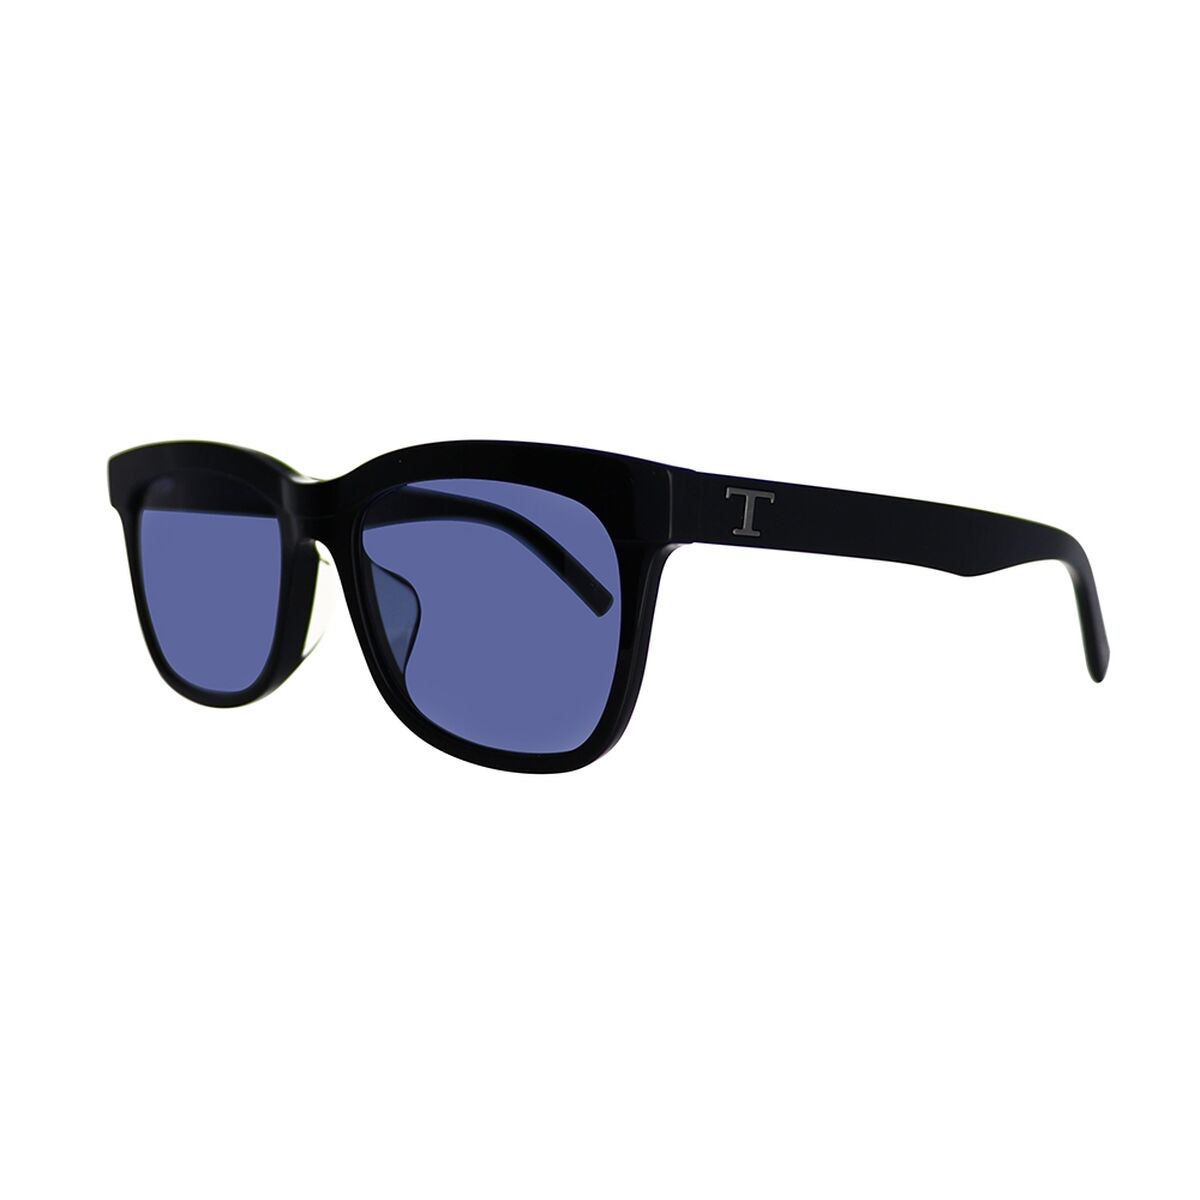 Men's Sunglasses Tods TO0319_D-01V-55